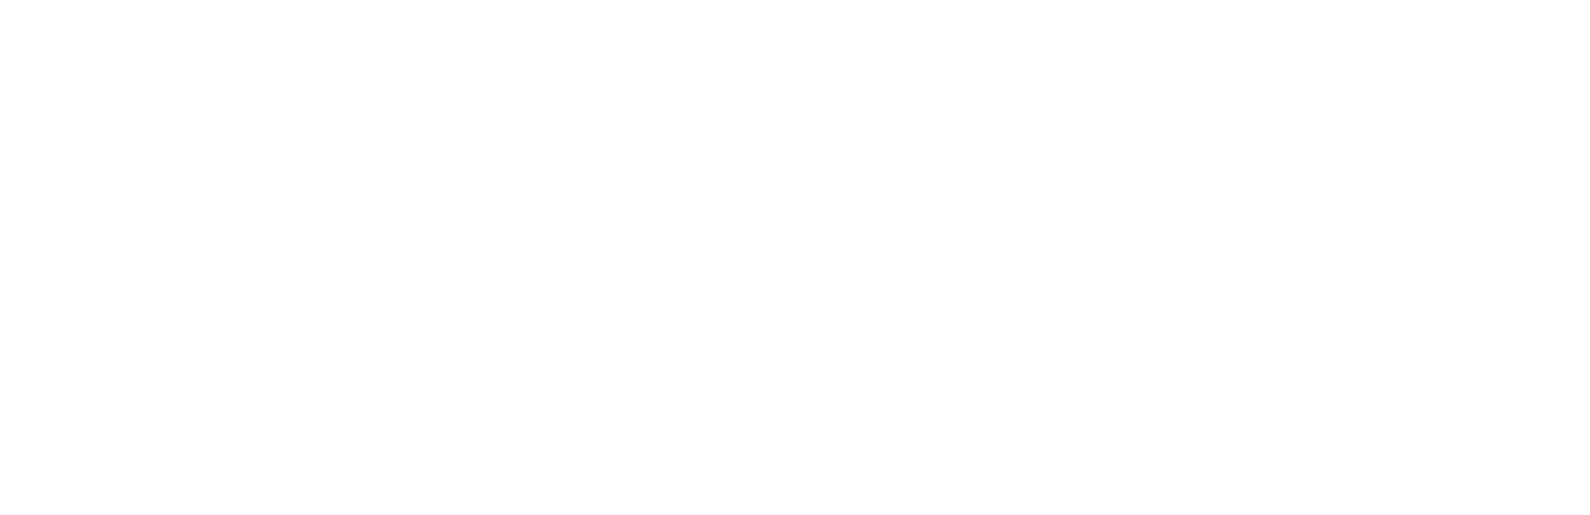 Adyen logo grand pour les fonds sombres (PNG transparent)